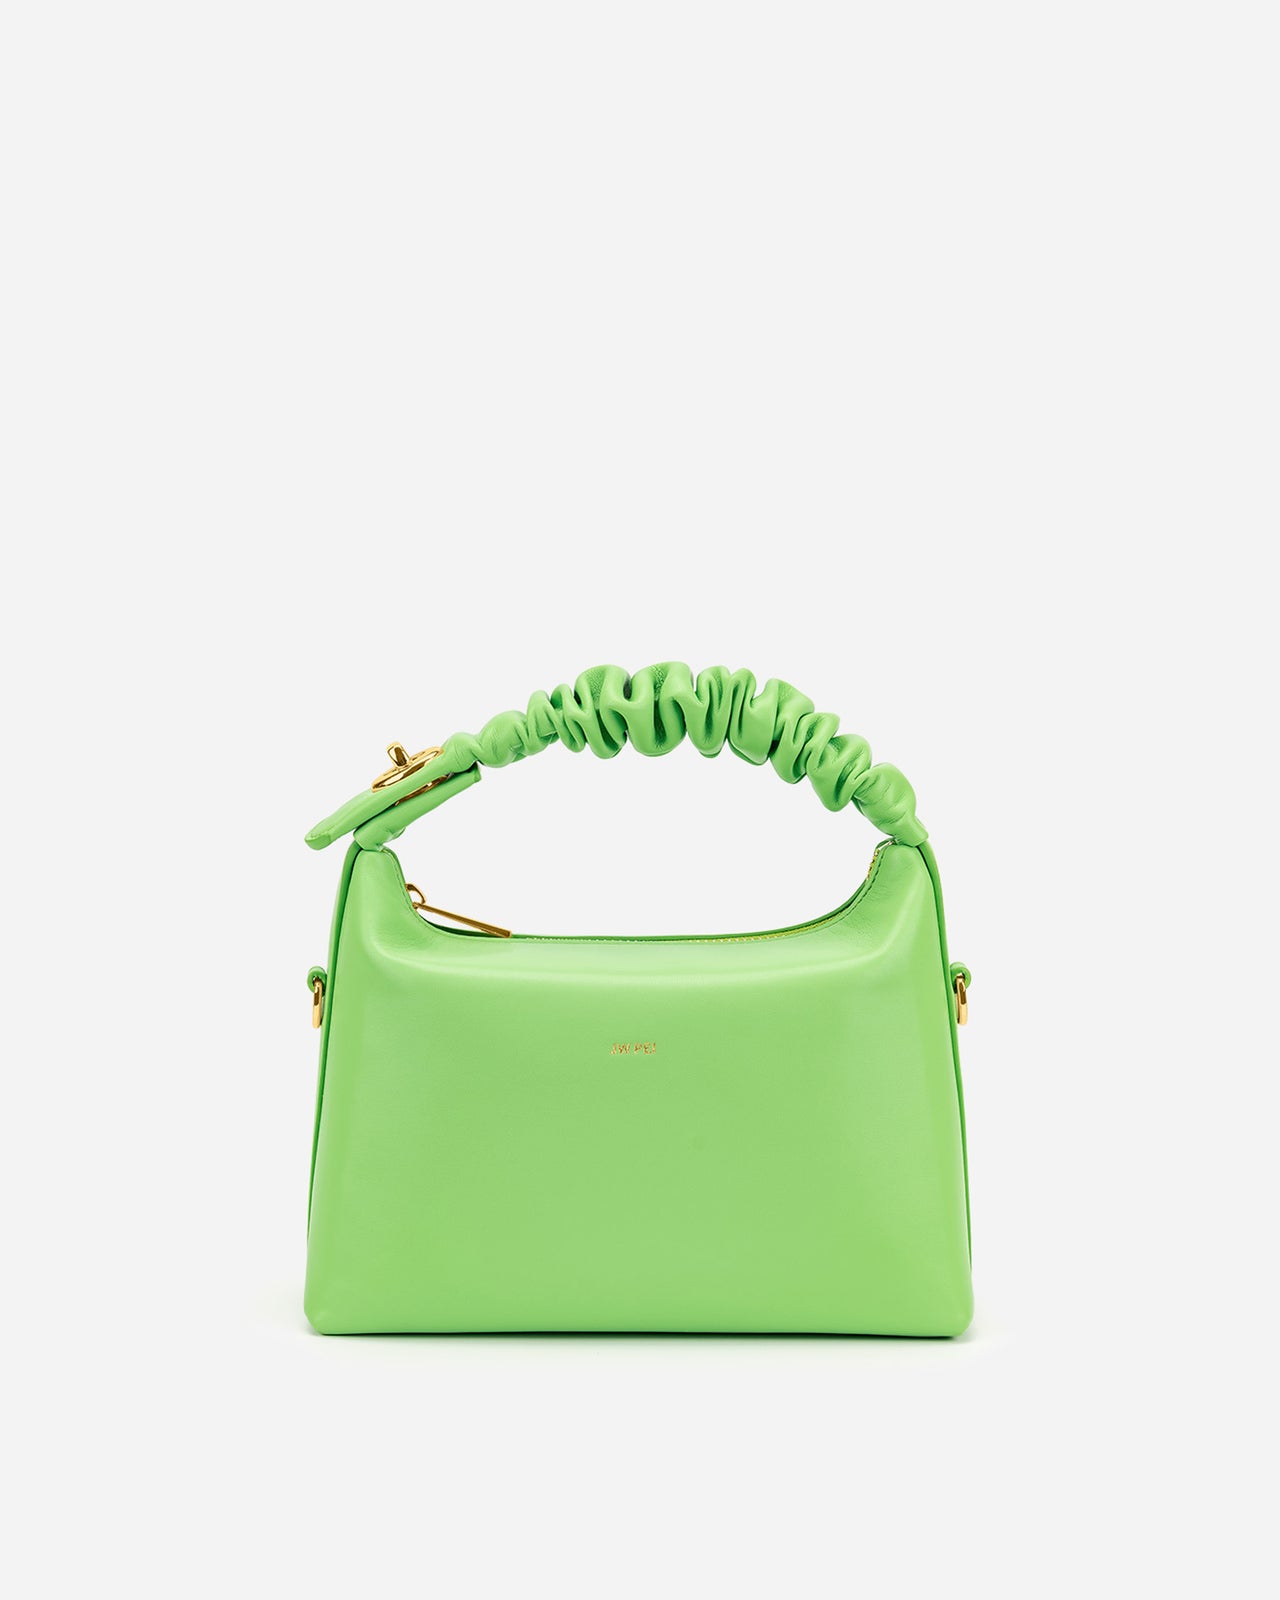 Cora Top Handle Bag - Lime Green